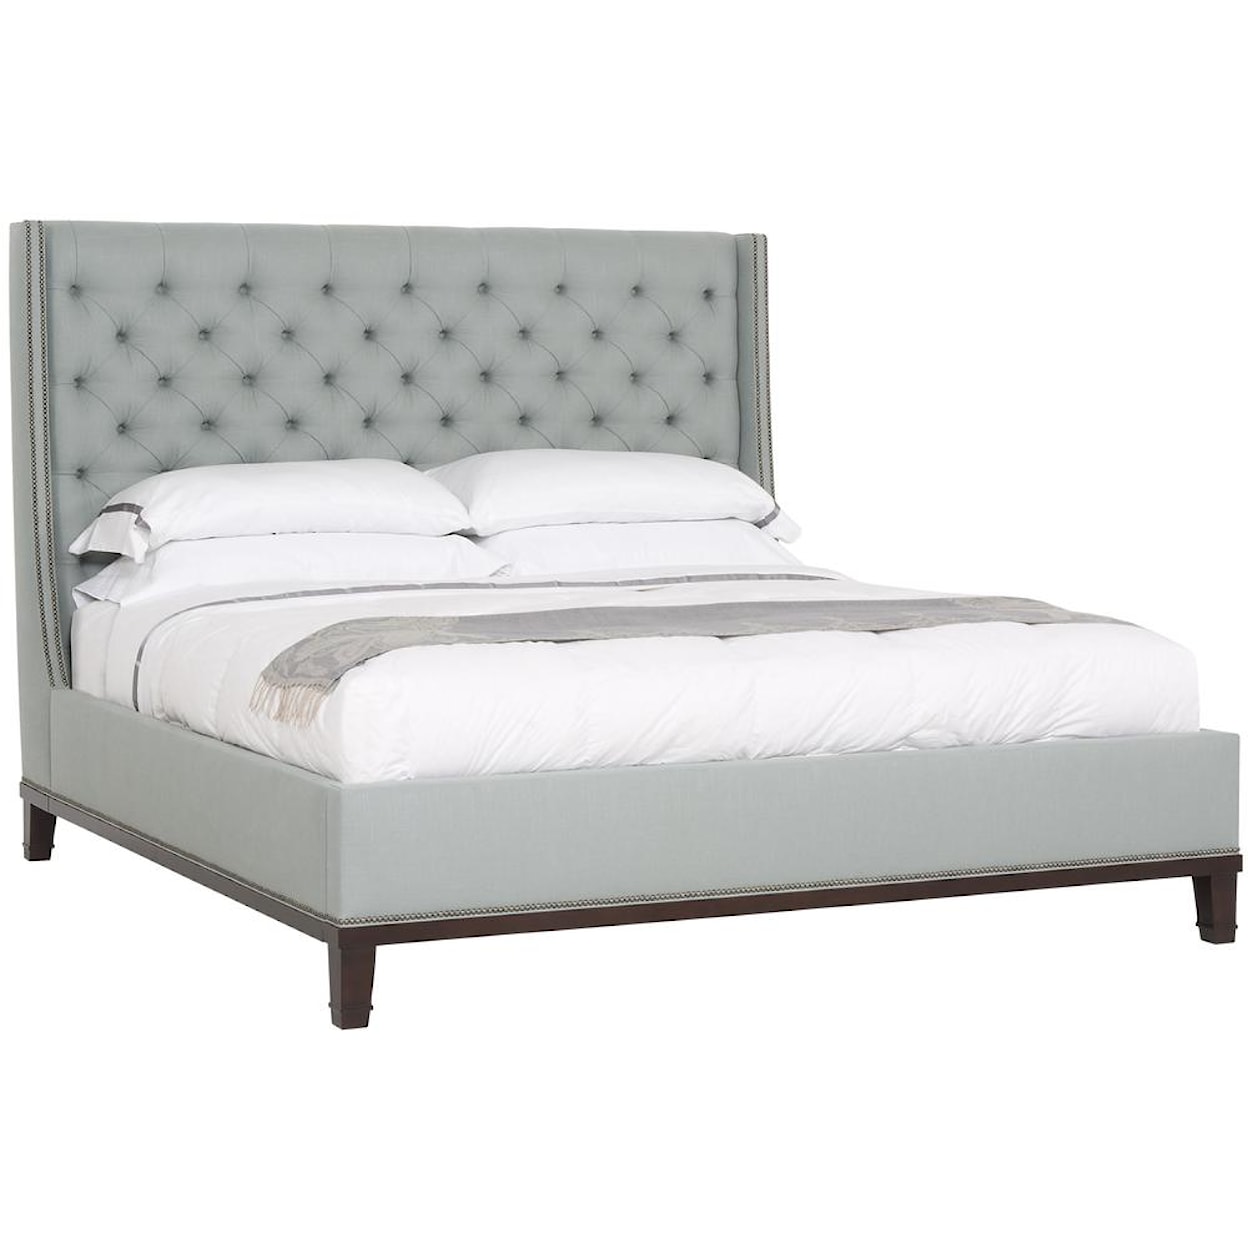 Vanguard Furniture Master Bedroom Cleo Queen Upholstered Bed